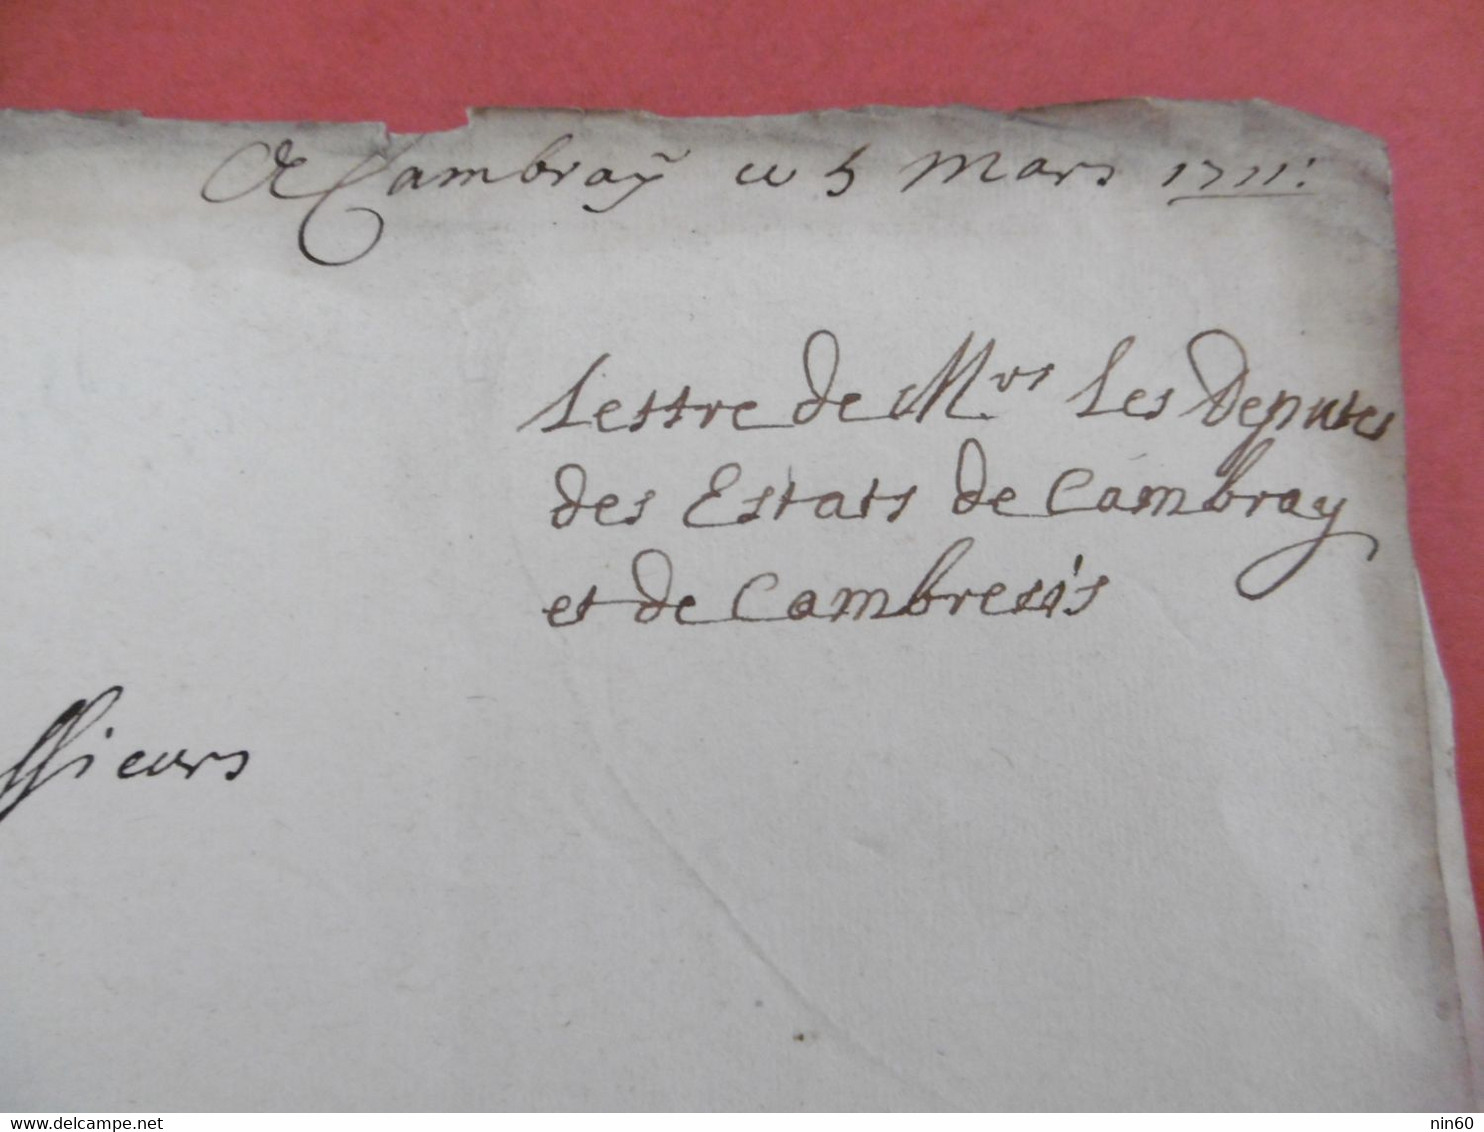 CAMBRAI 5 Mars 1711. Requete Députés De Cambray Et Cambresis Au Conseil D'Etat. Augmentation Exorbitante Appointements - Manuskripte